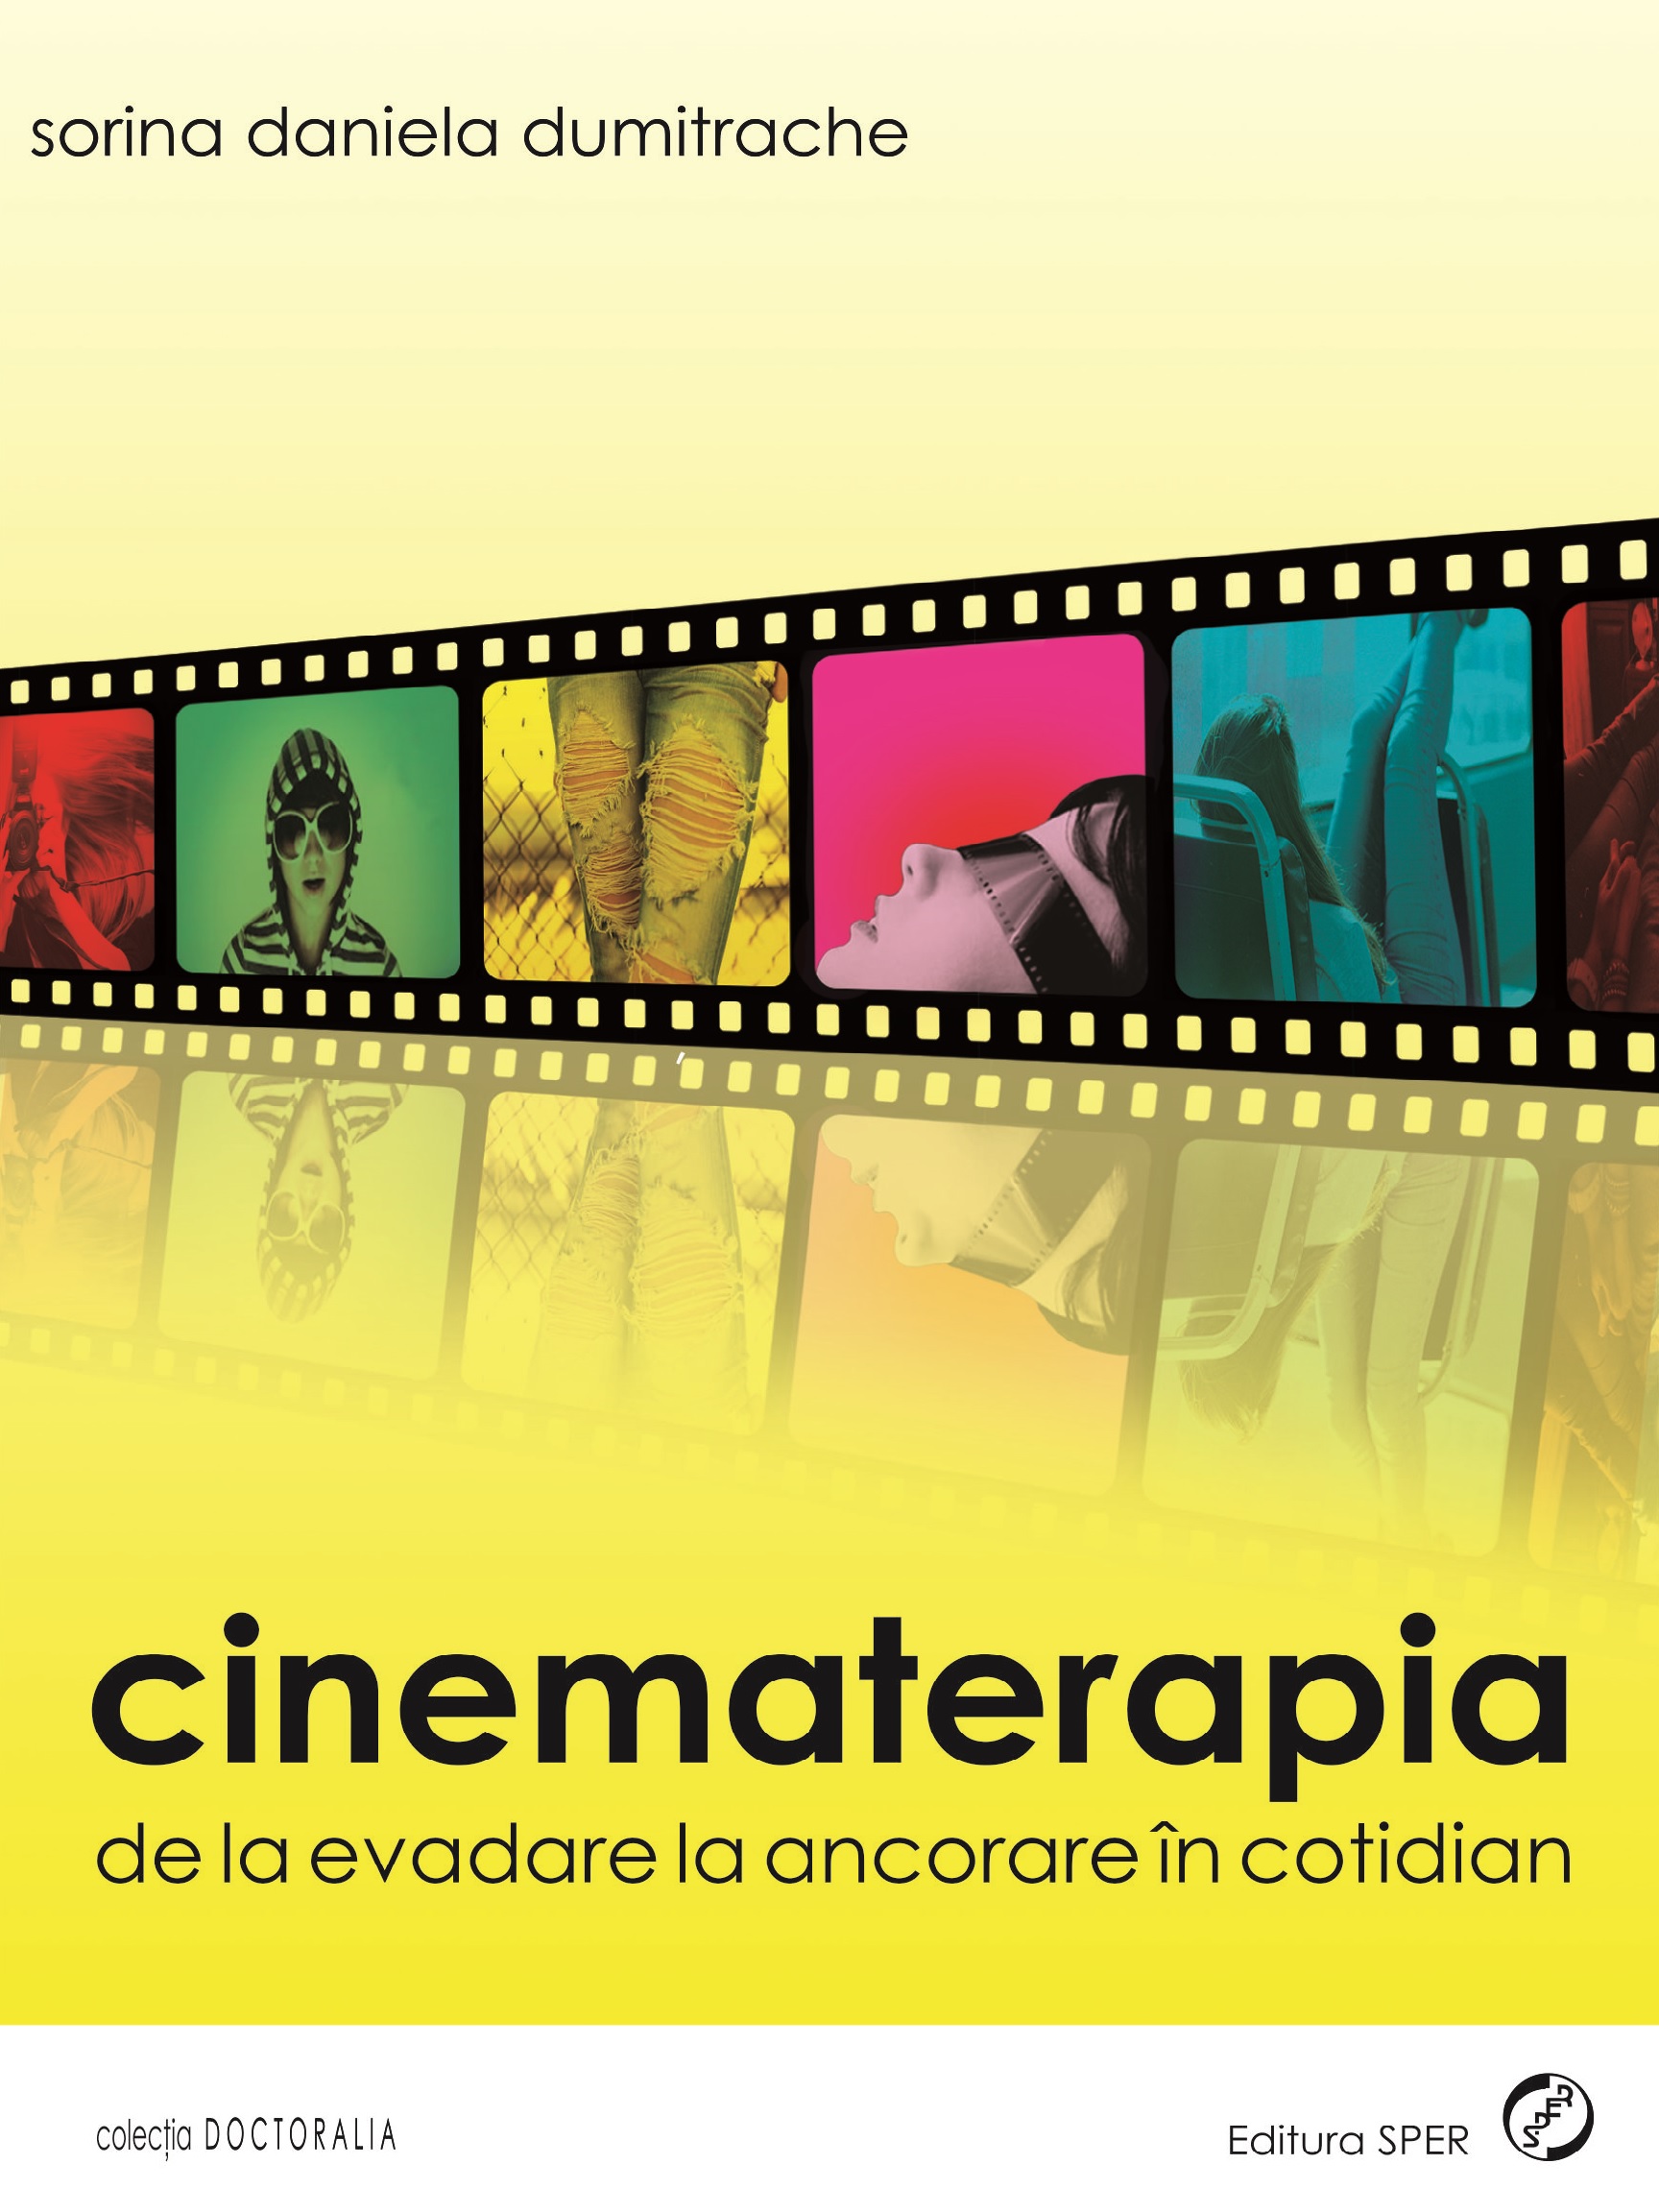 Cinematerapia. De La Evadare La Ancorare In Cotidian - Sorina Daniela Dumitrache